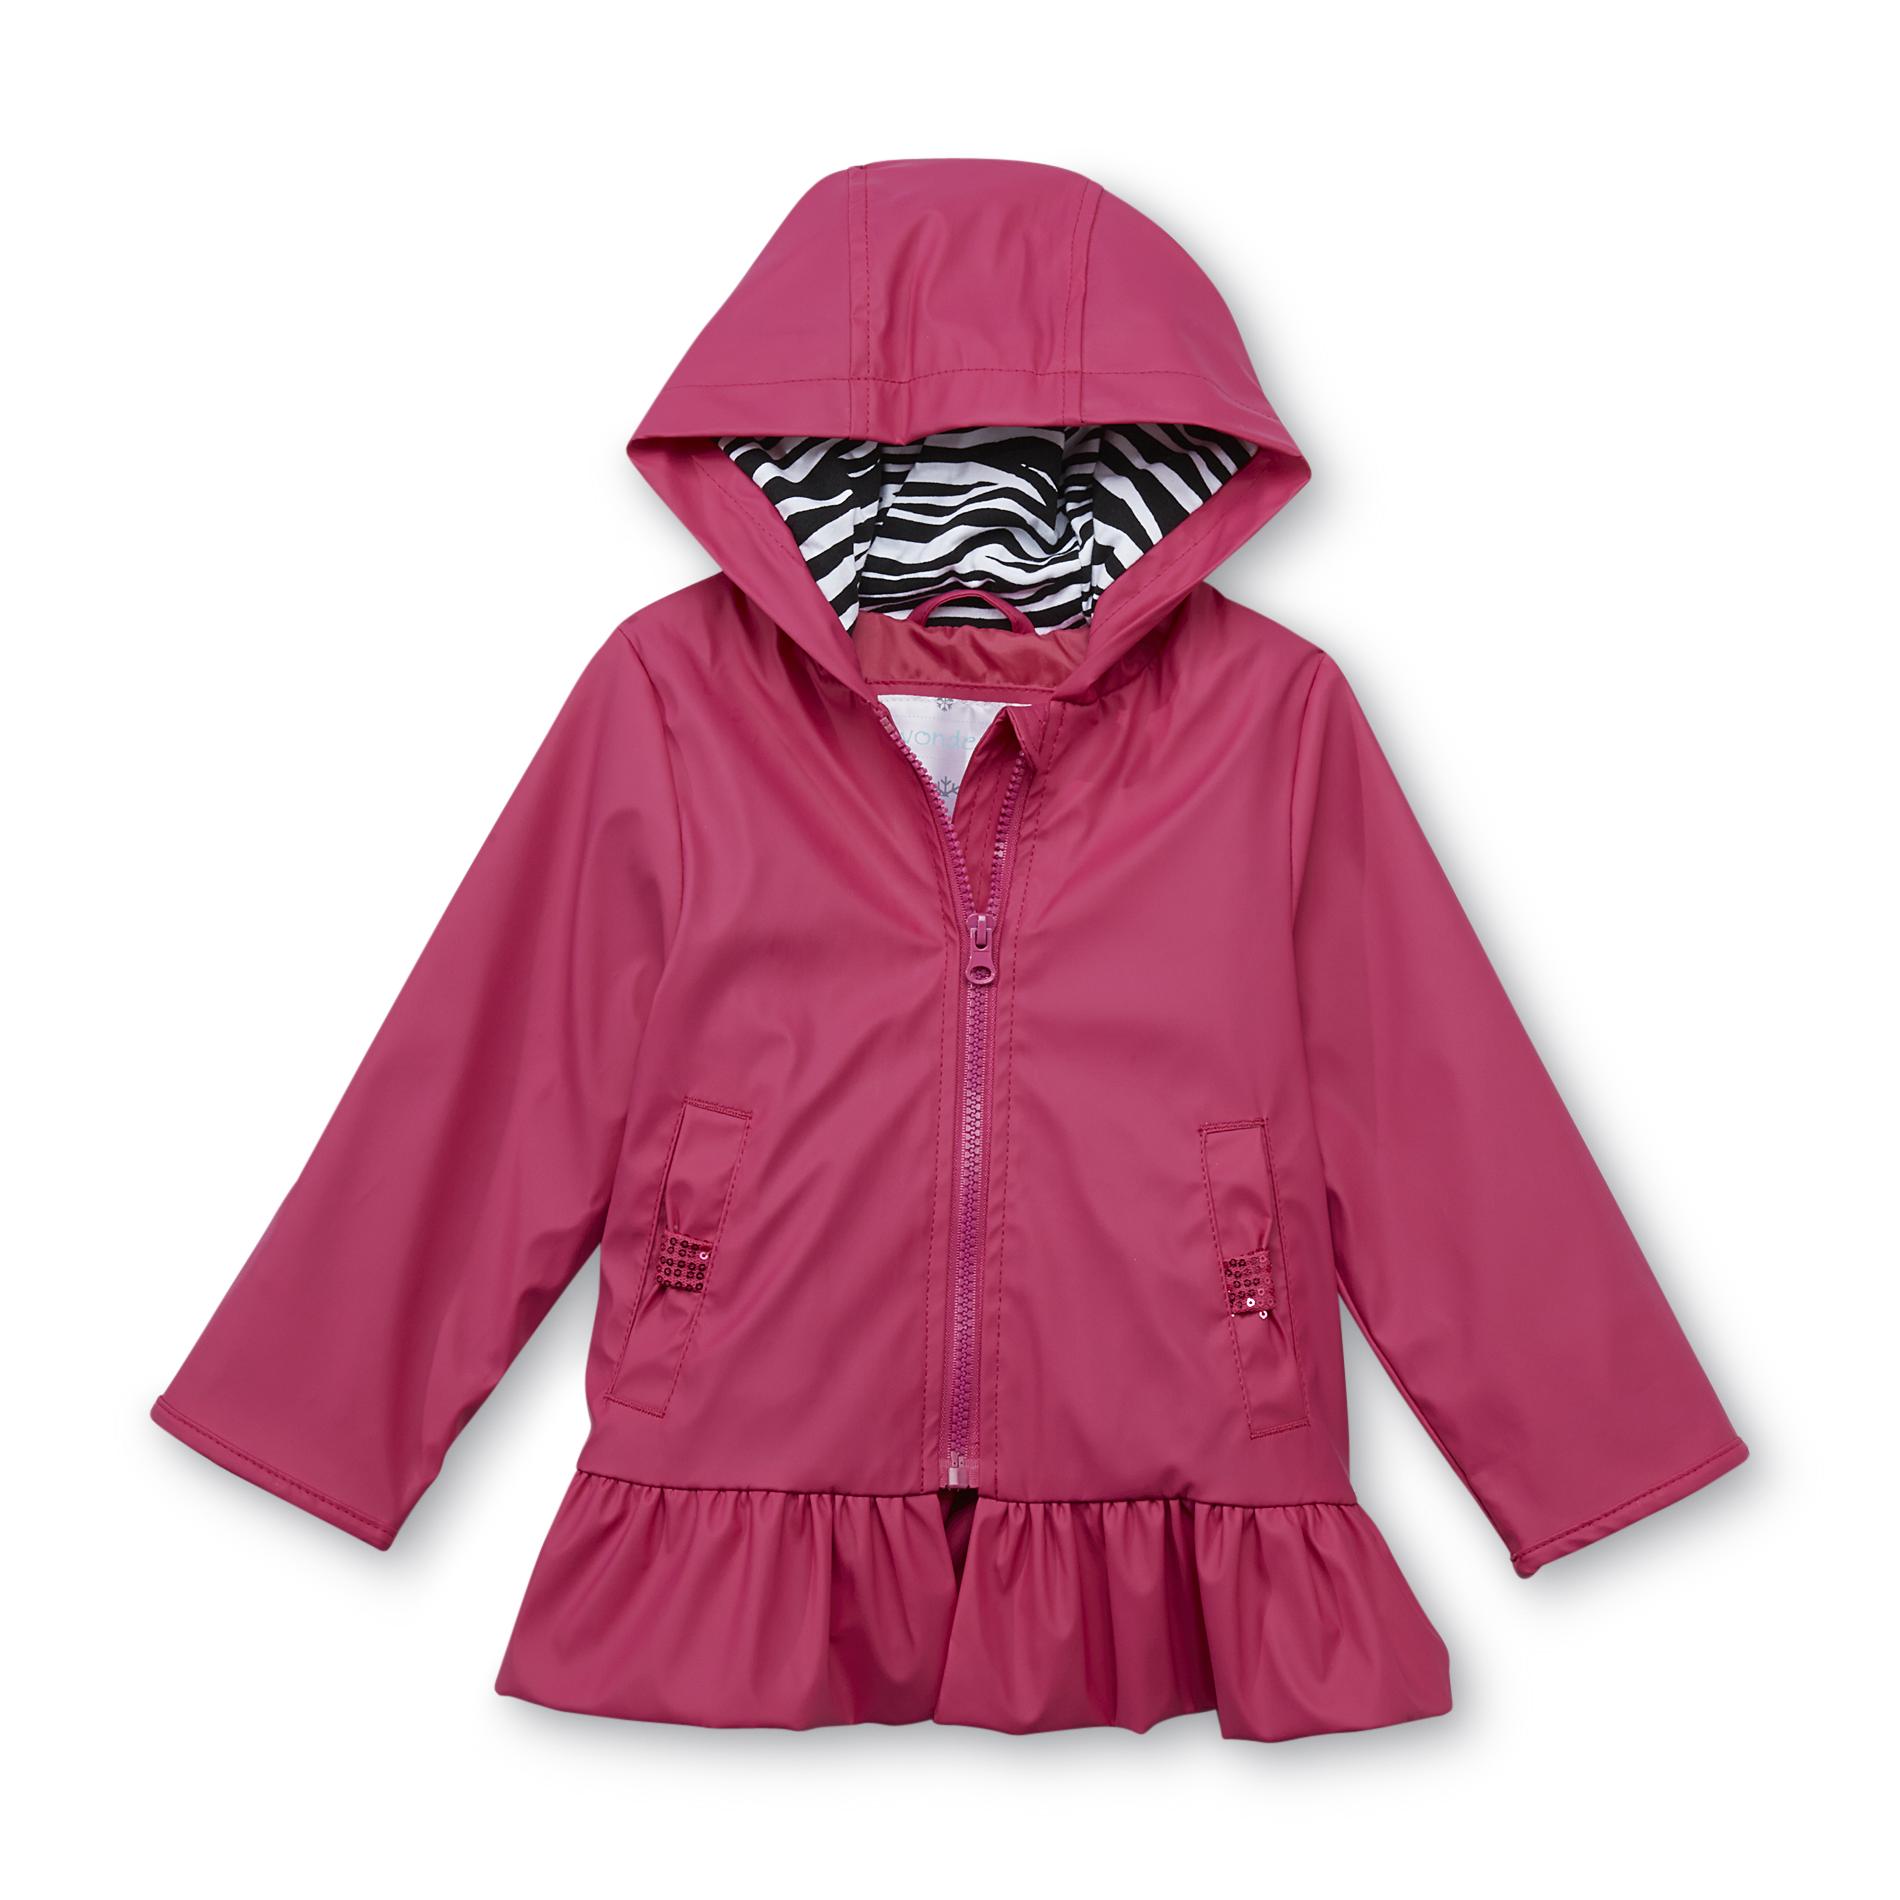 WonderKids Toddler Girl's Hooded Raincoat